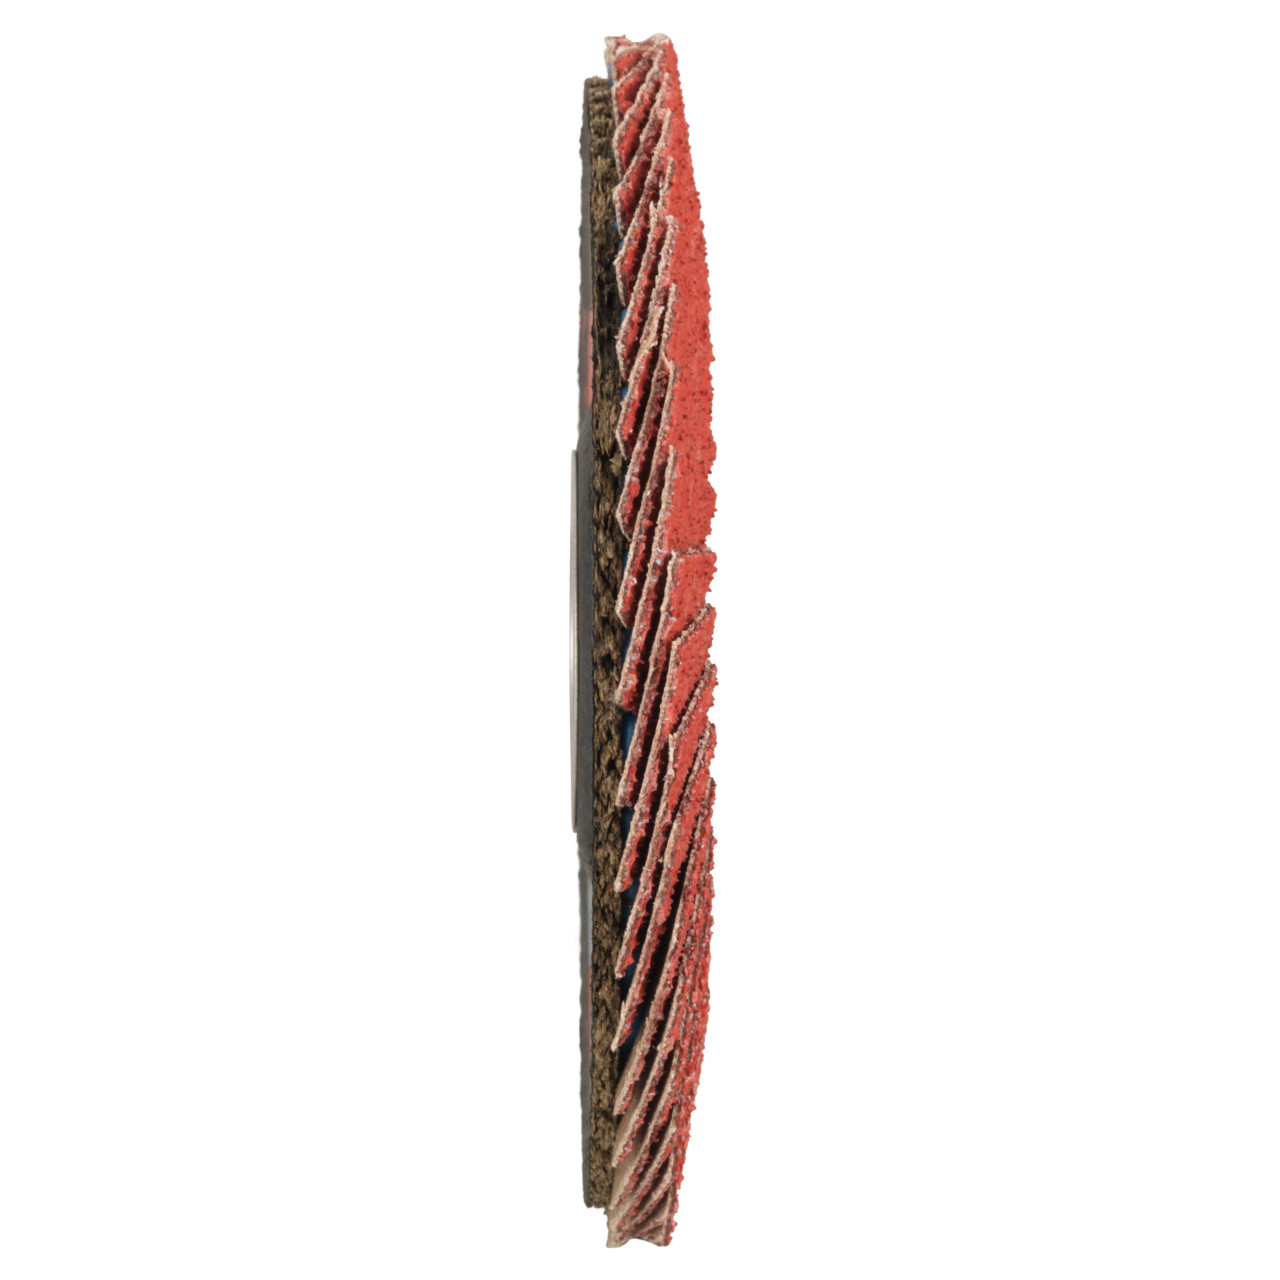 Tyrolit Arandela de seguridad dentada DxH 178x22,23 CERÁMICA para acero inoxidable, P60, forma: 28A - versión recta (versión con cuerpo de soporte de fibra de vidrio), Art. 34166860